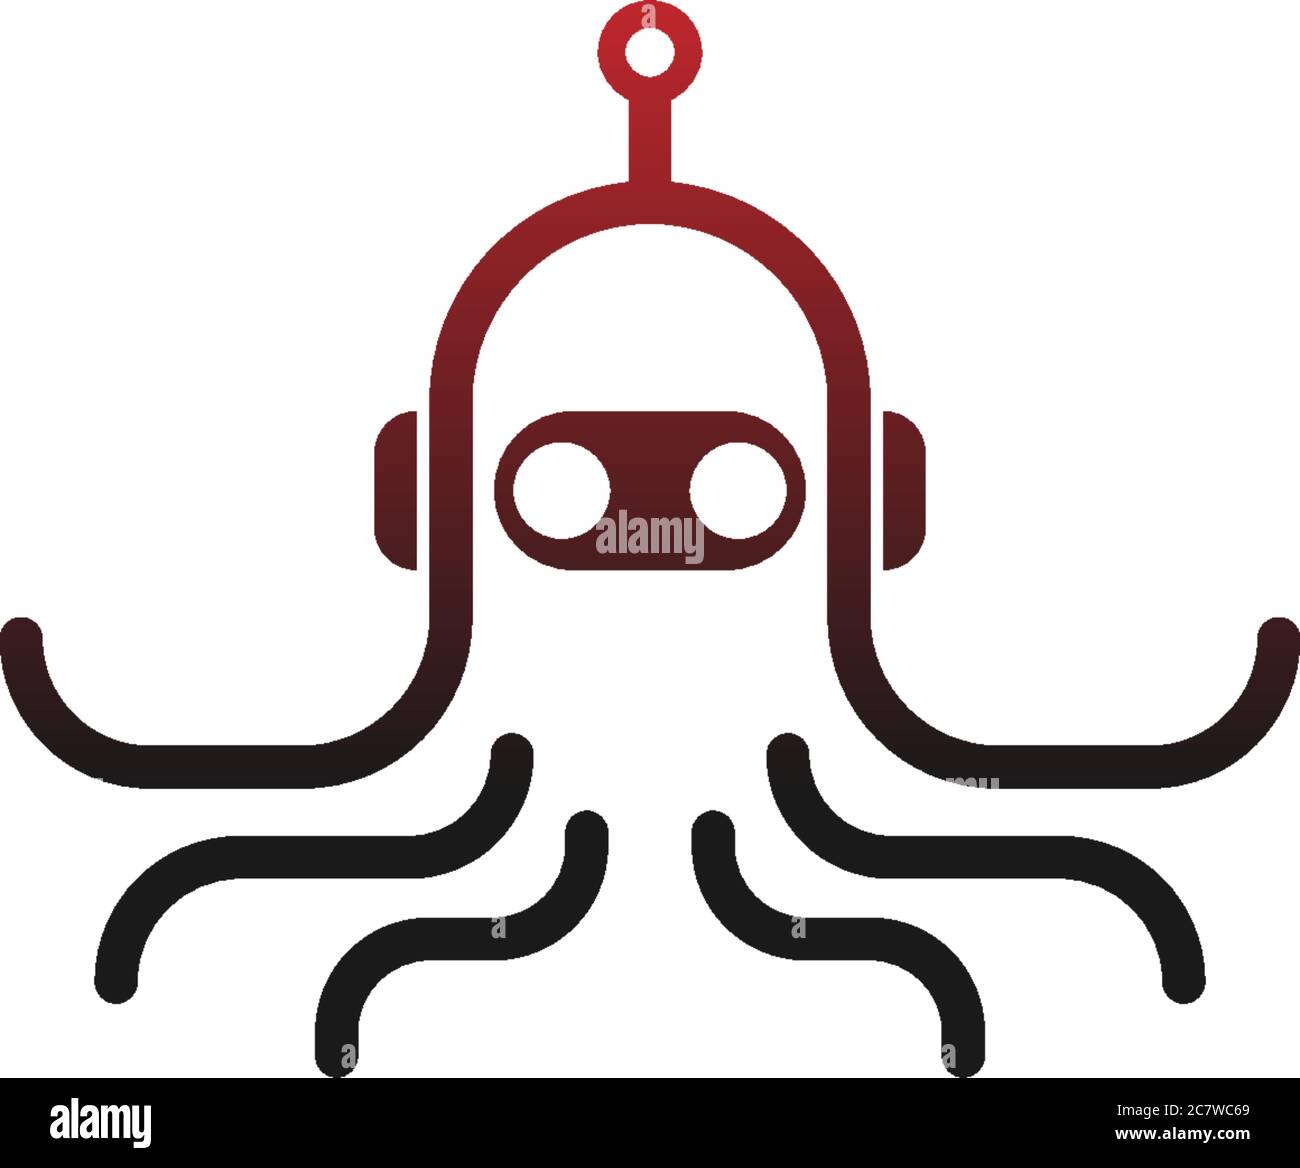 Octopus robot logo icon vector template Stock Vector Image & Art - Alamy